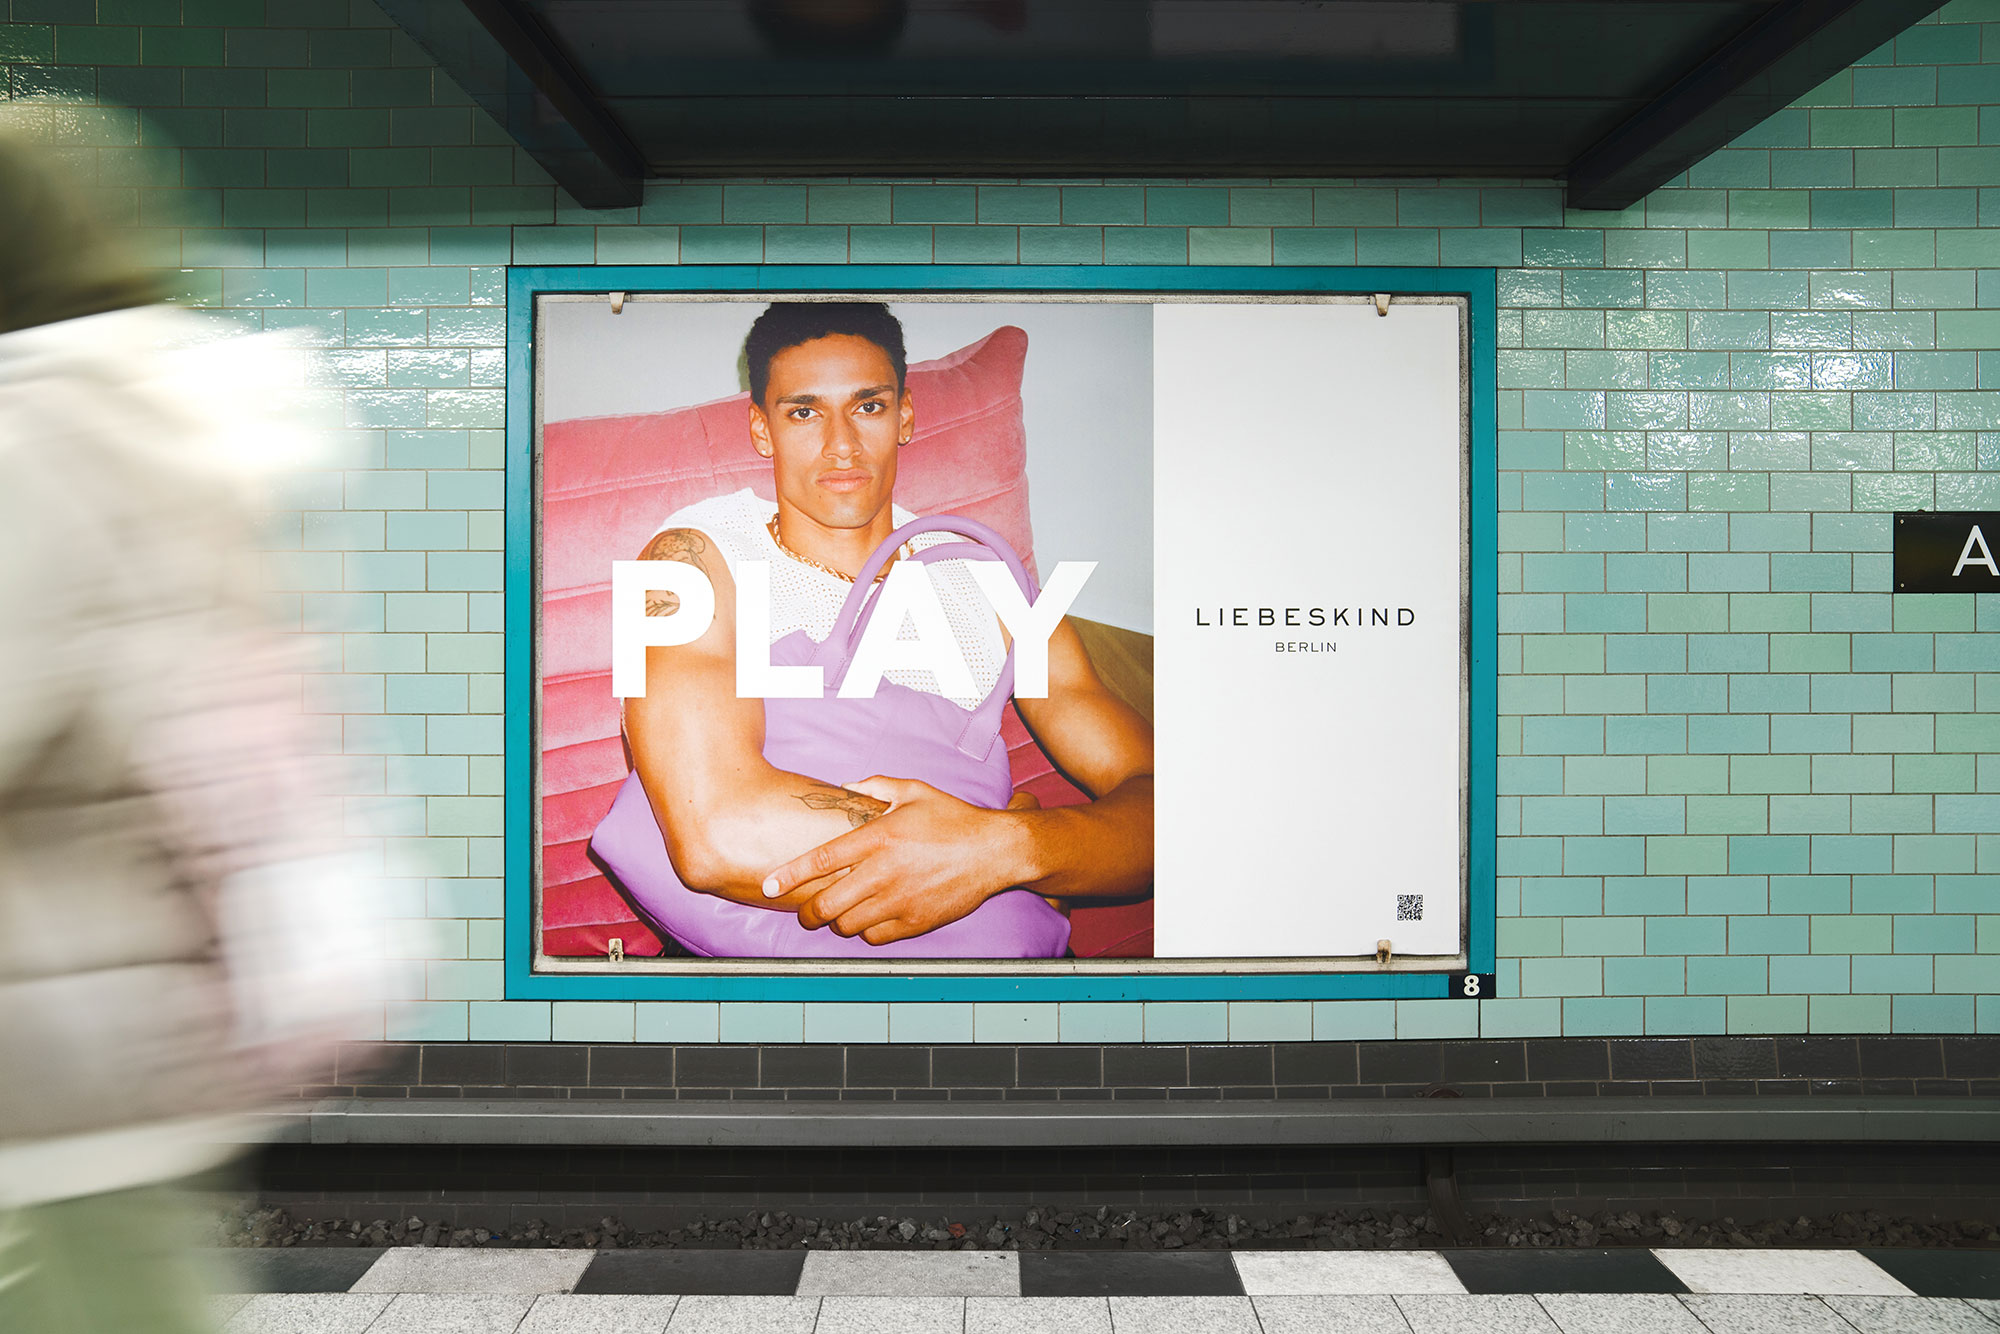 liebeskind-berlin-brand-activation-campaign-alexanderplatz-2